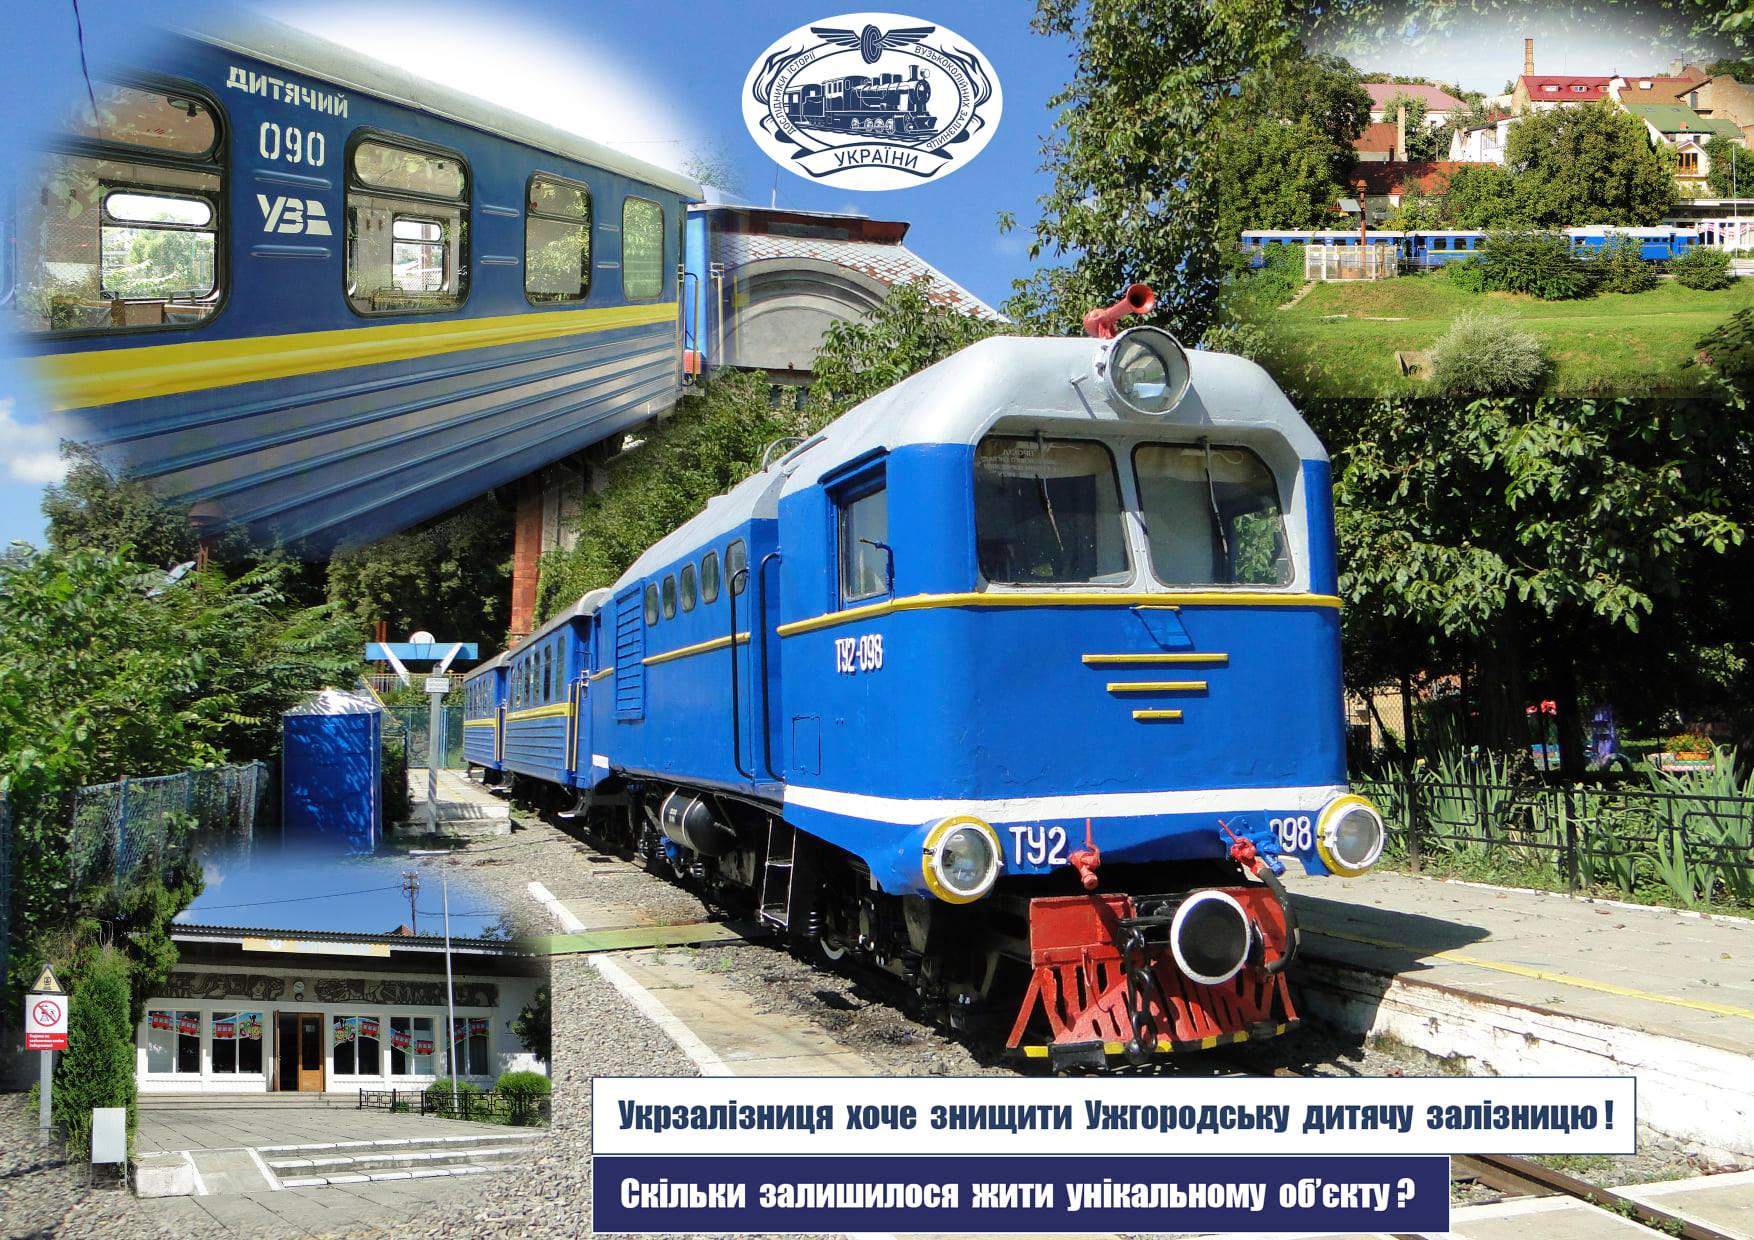 Ужгородську дитячу залізницю не закривають, після стабілізації ситуації вона повернеться до роботи – ОДА